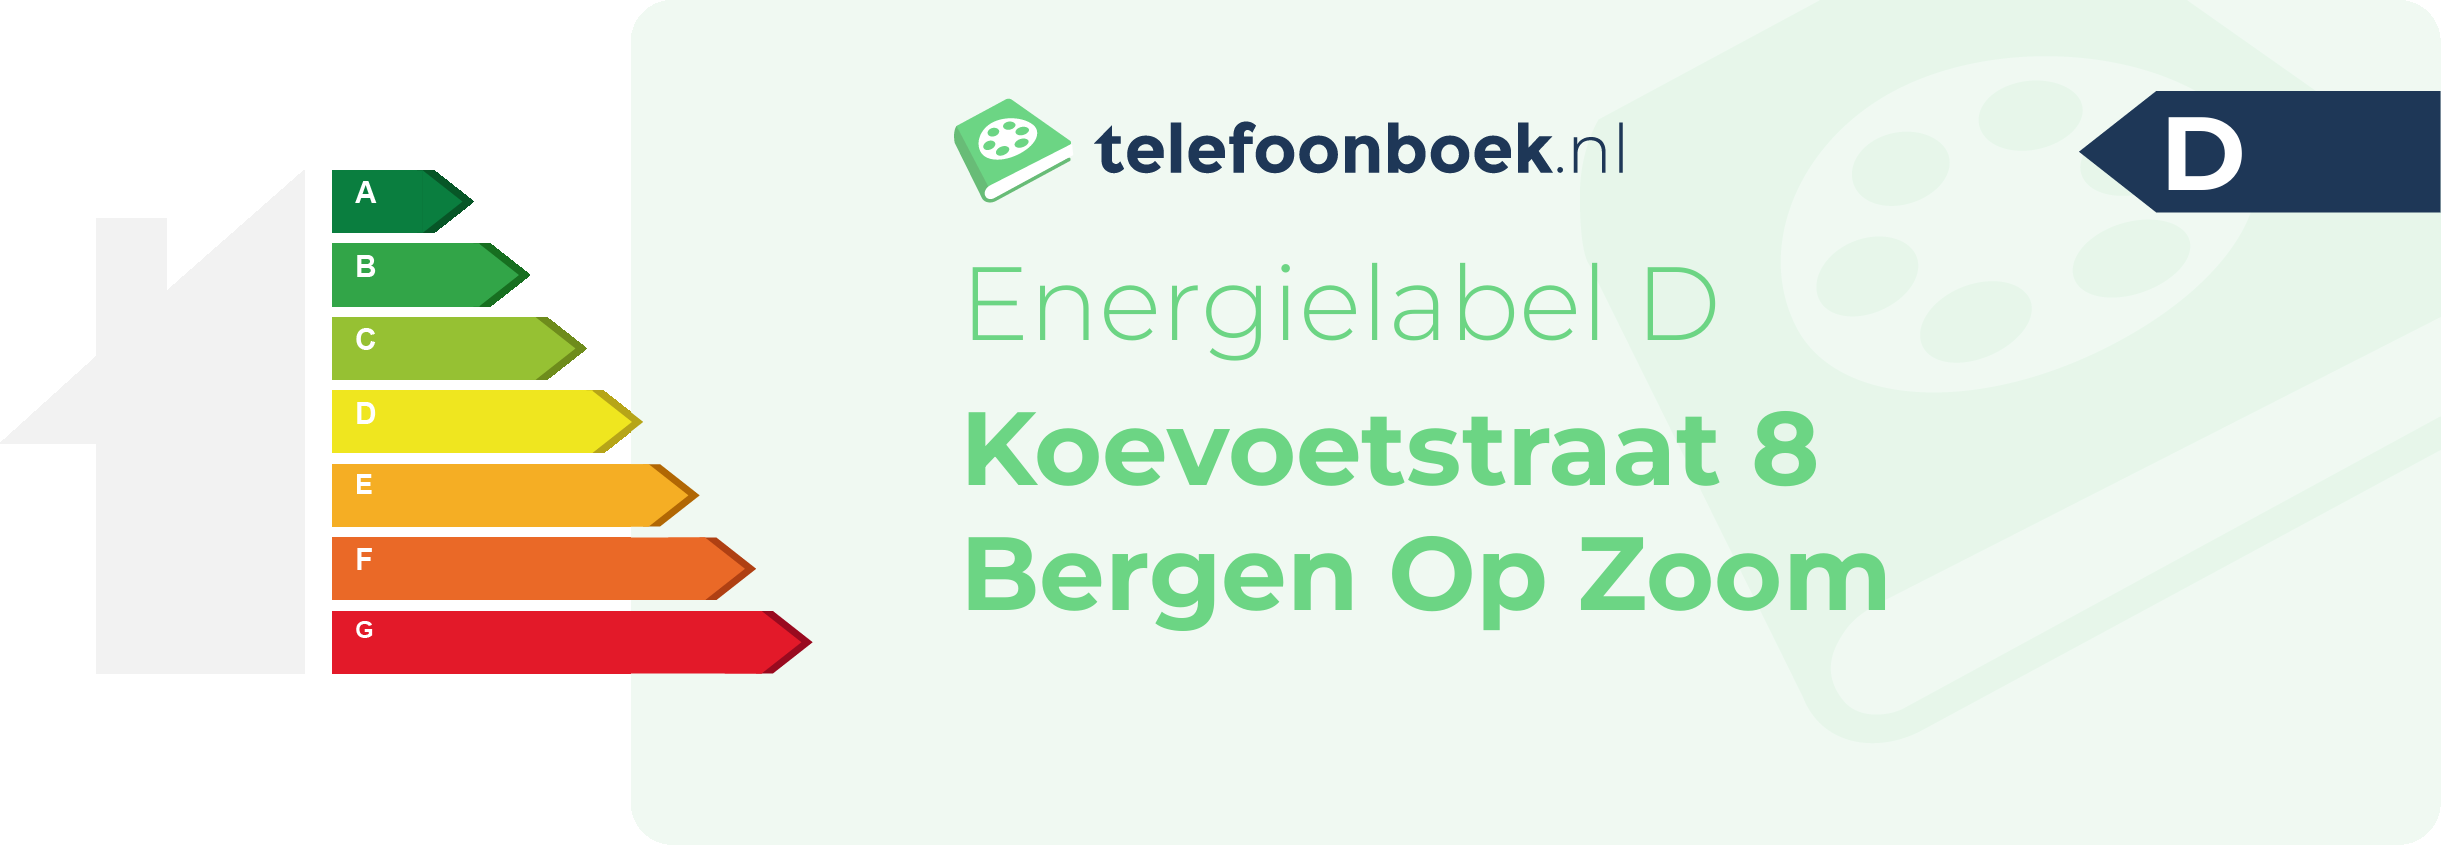 Energielabel Koevoetstraat 8 Bergen Op Zoom